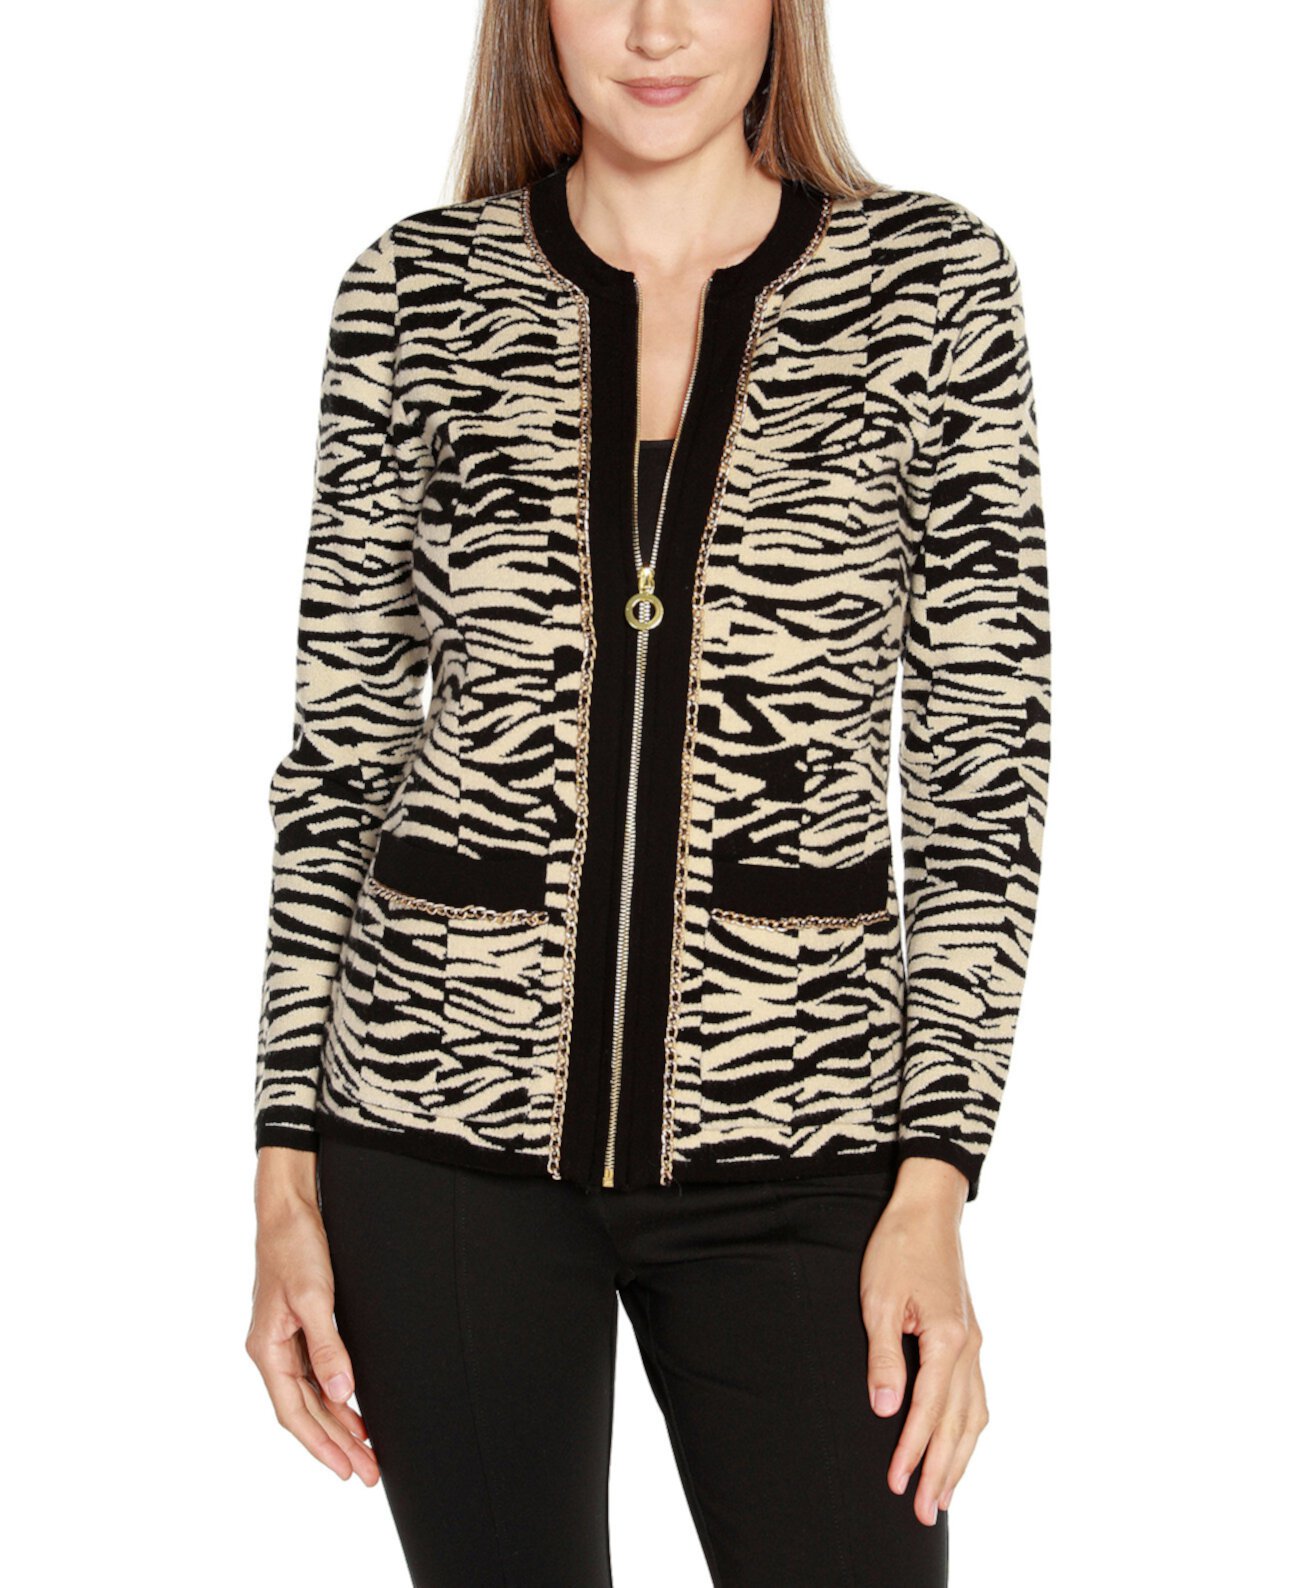 Женская жаккардовая куртка-свитер с принтом зебры Black Label Belldini